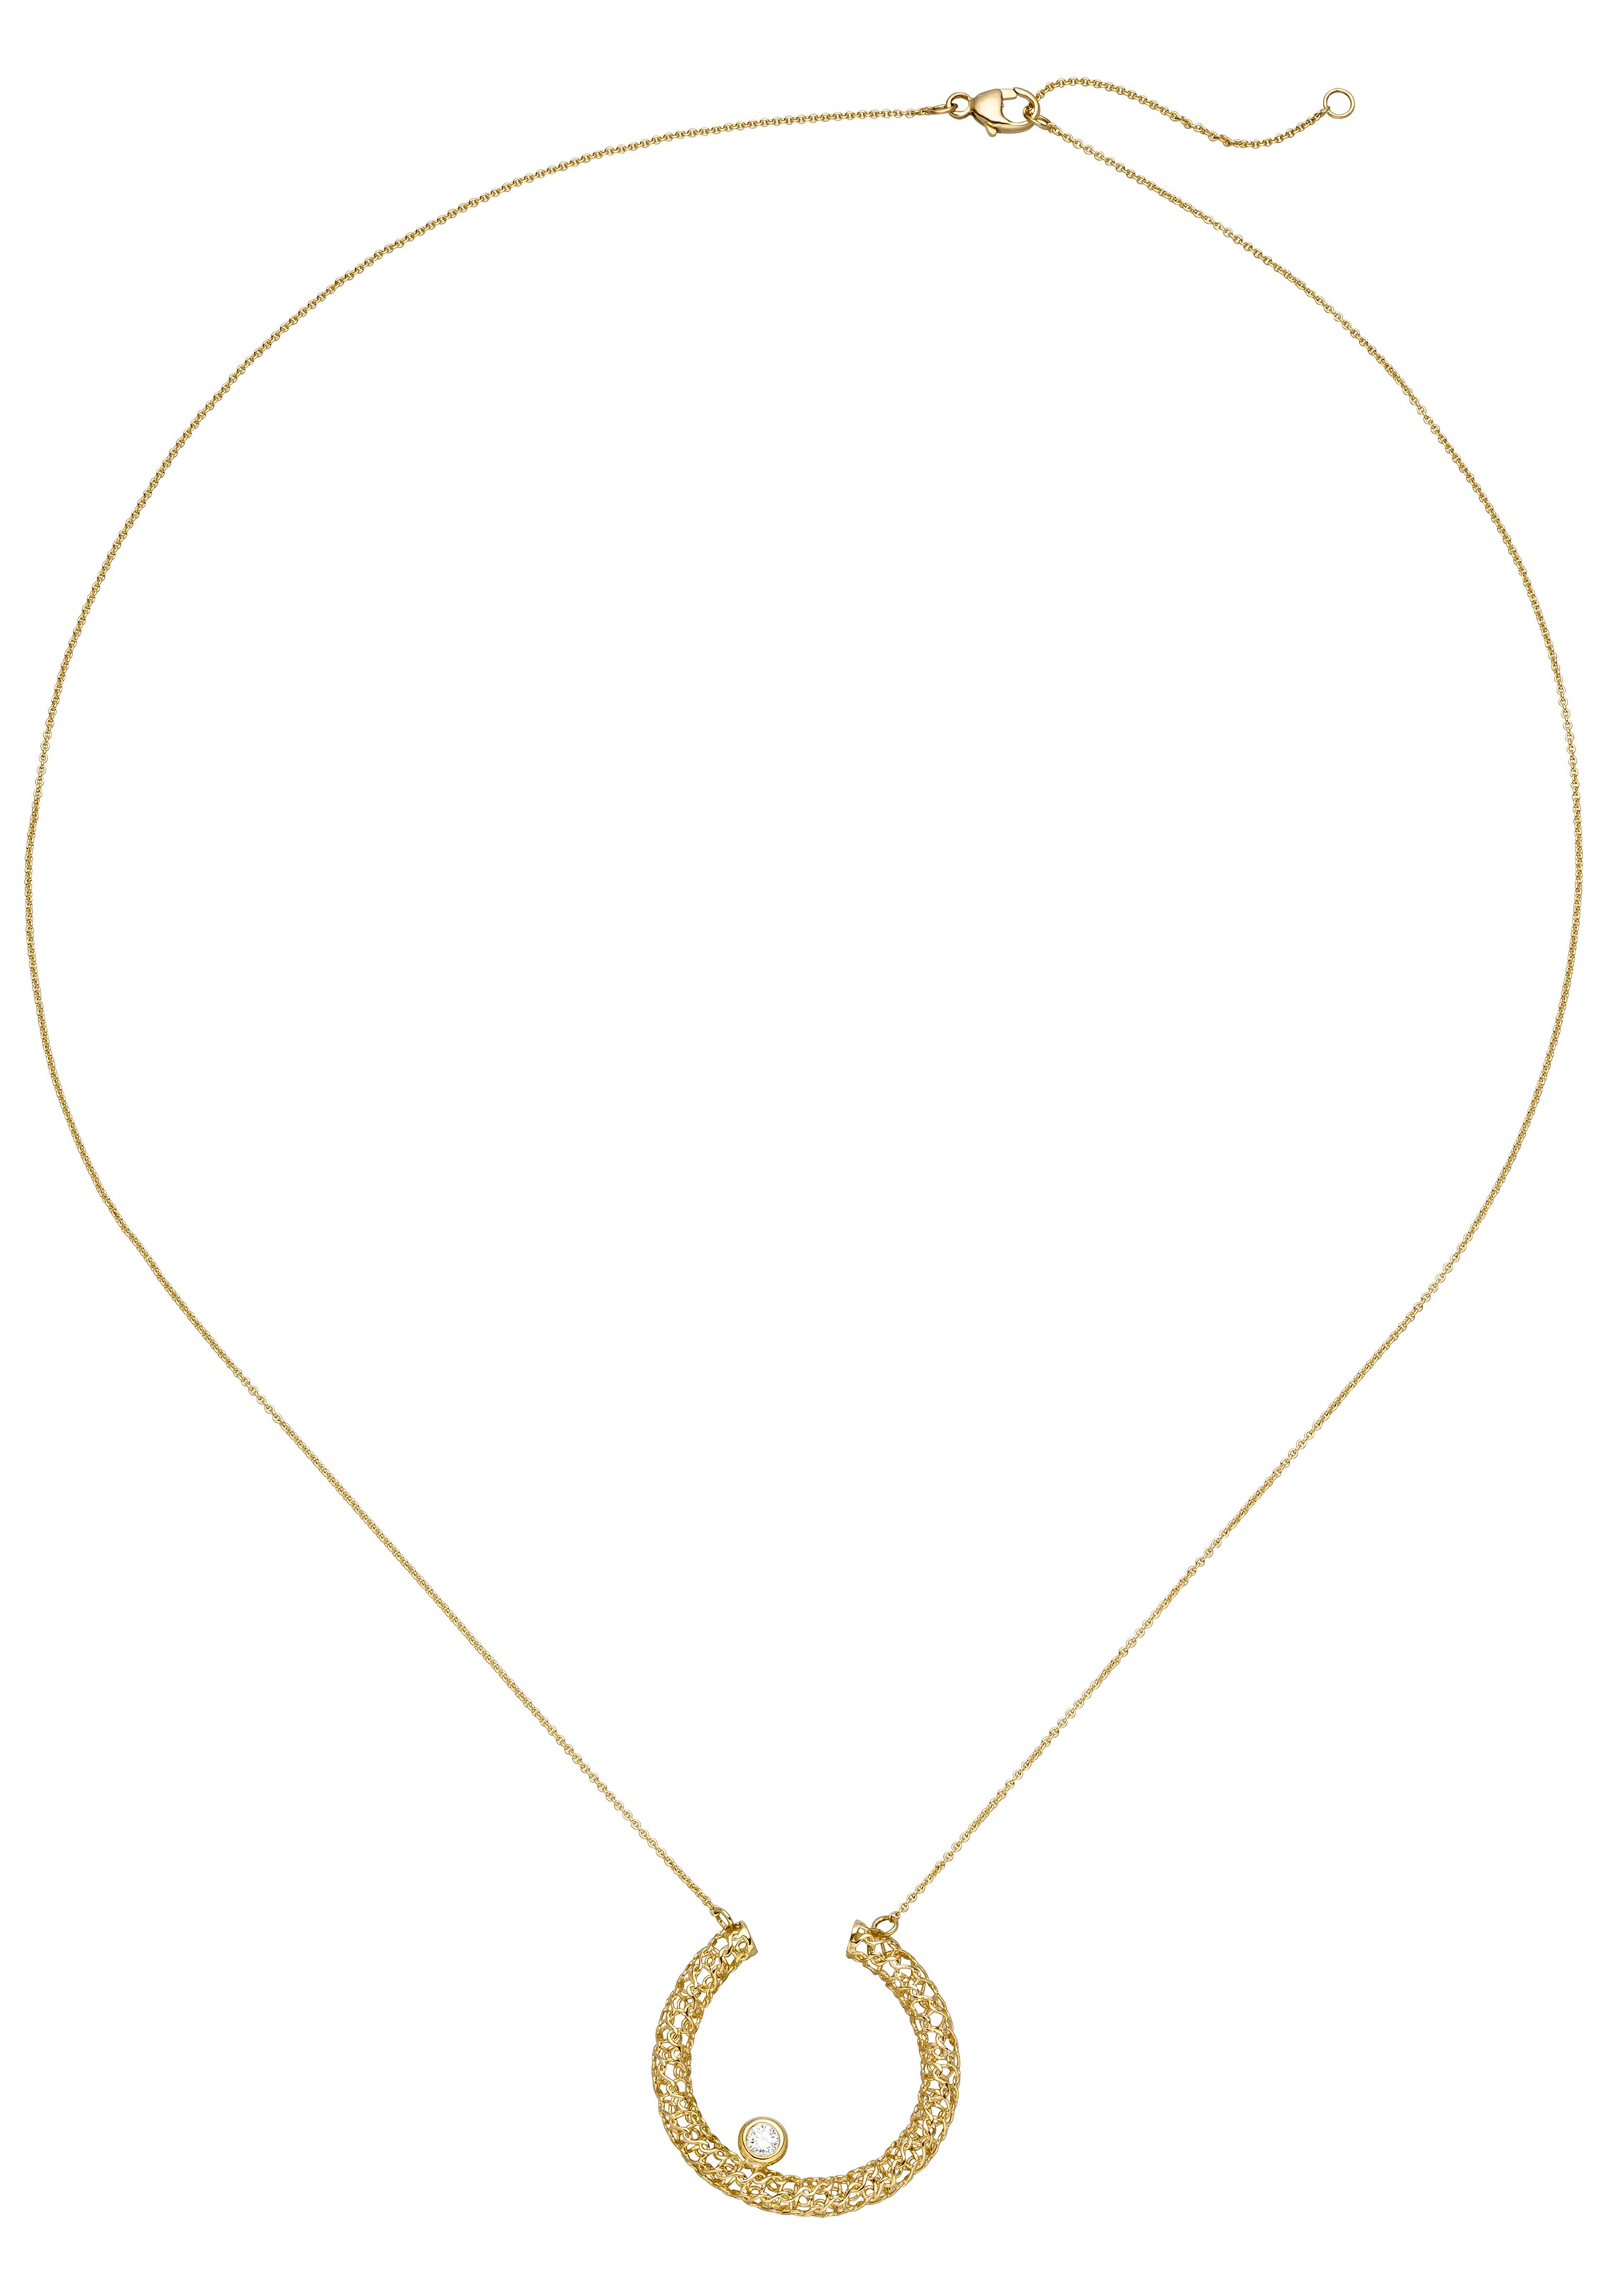 JOBO Collier, 750 Gold mit 1 Diamant 45 cm